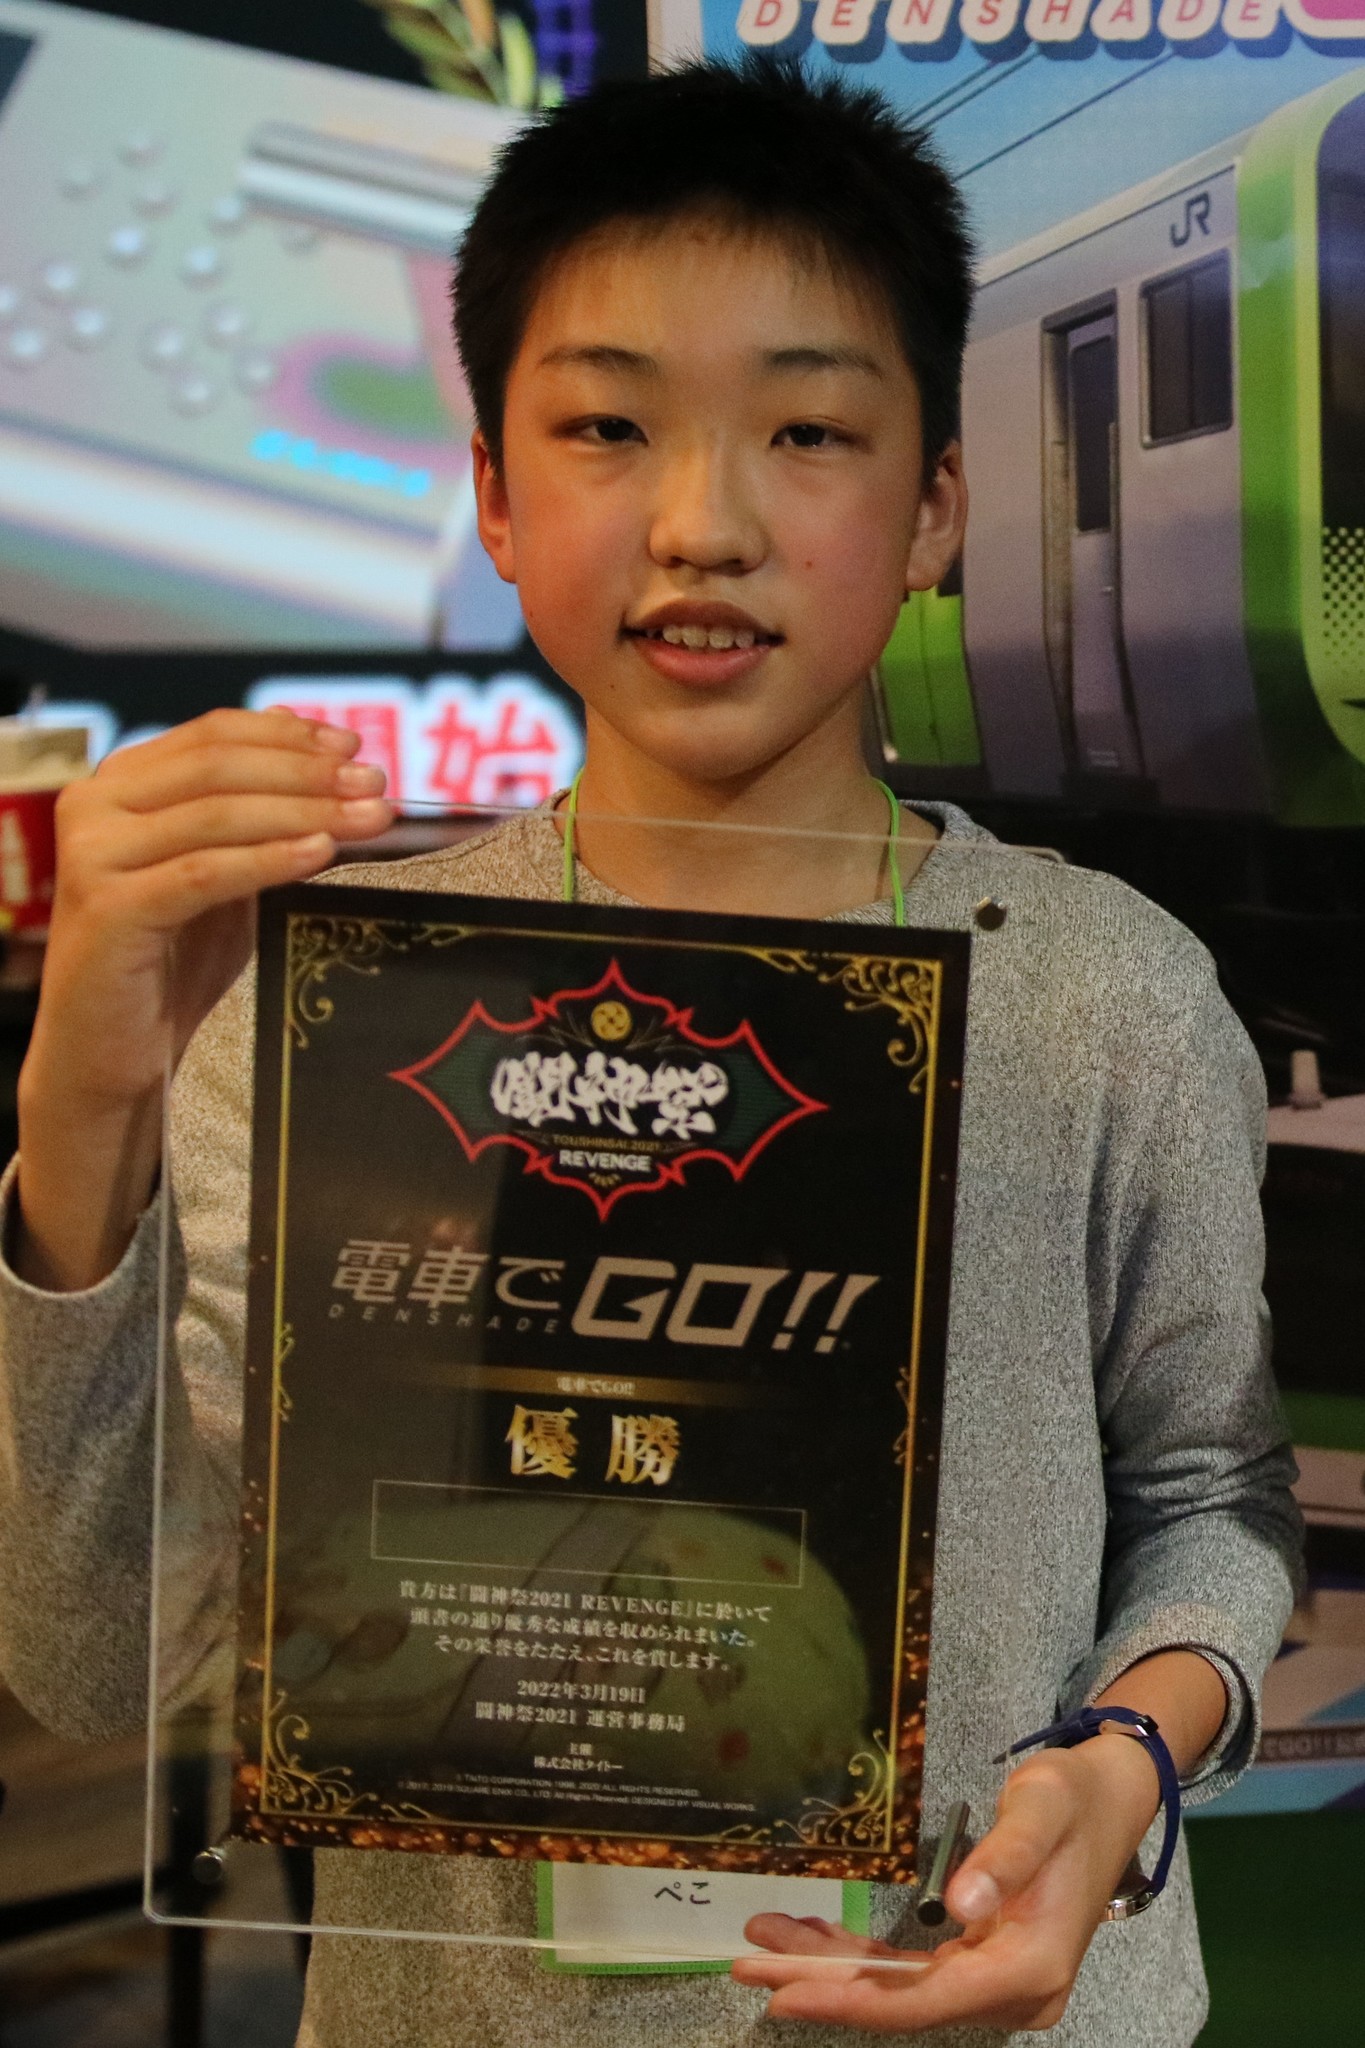 闘神祭21 Revenge 電車でｇｏ Final Roundで史上最年少12歳のチャンピオンが誕生 株式会社タイトーのプレスリリース